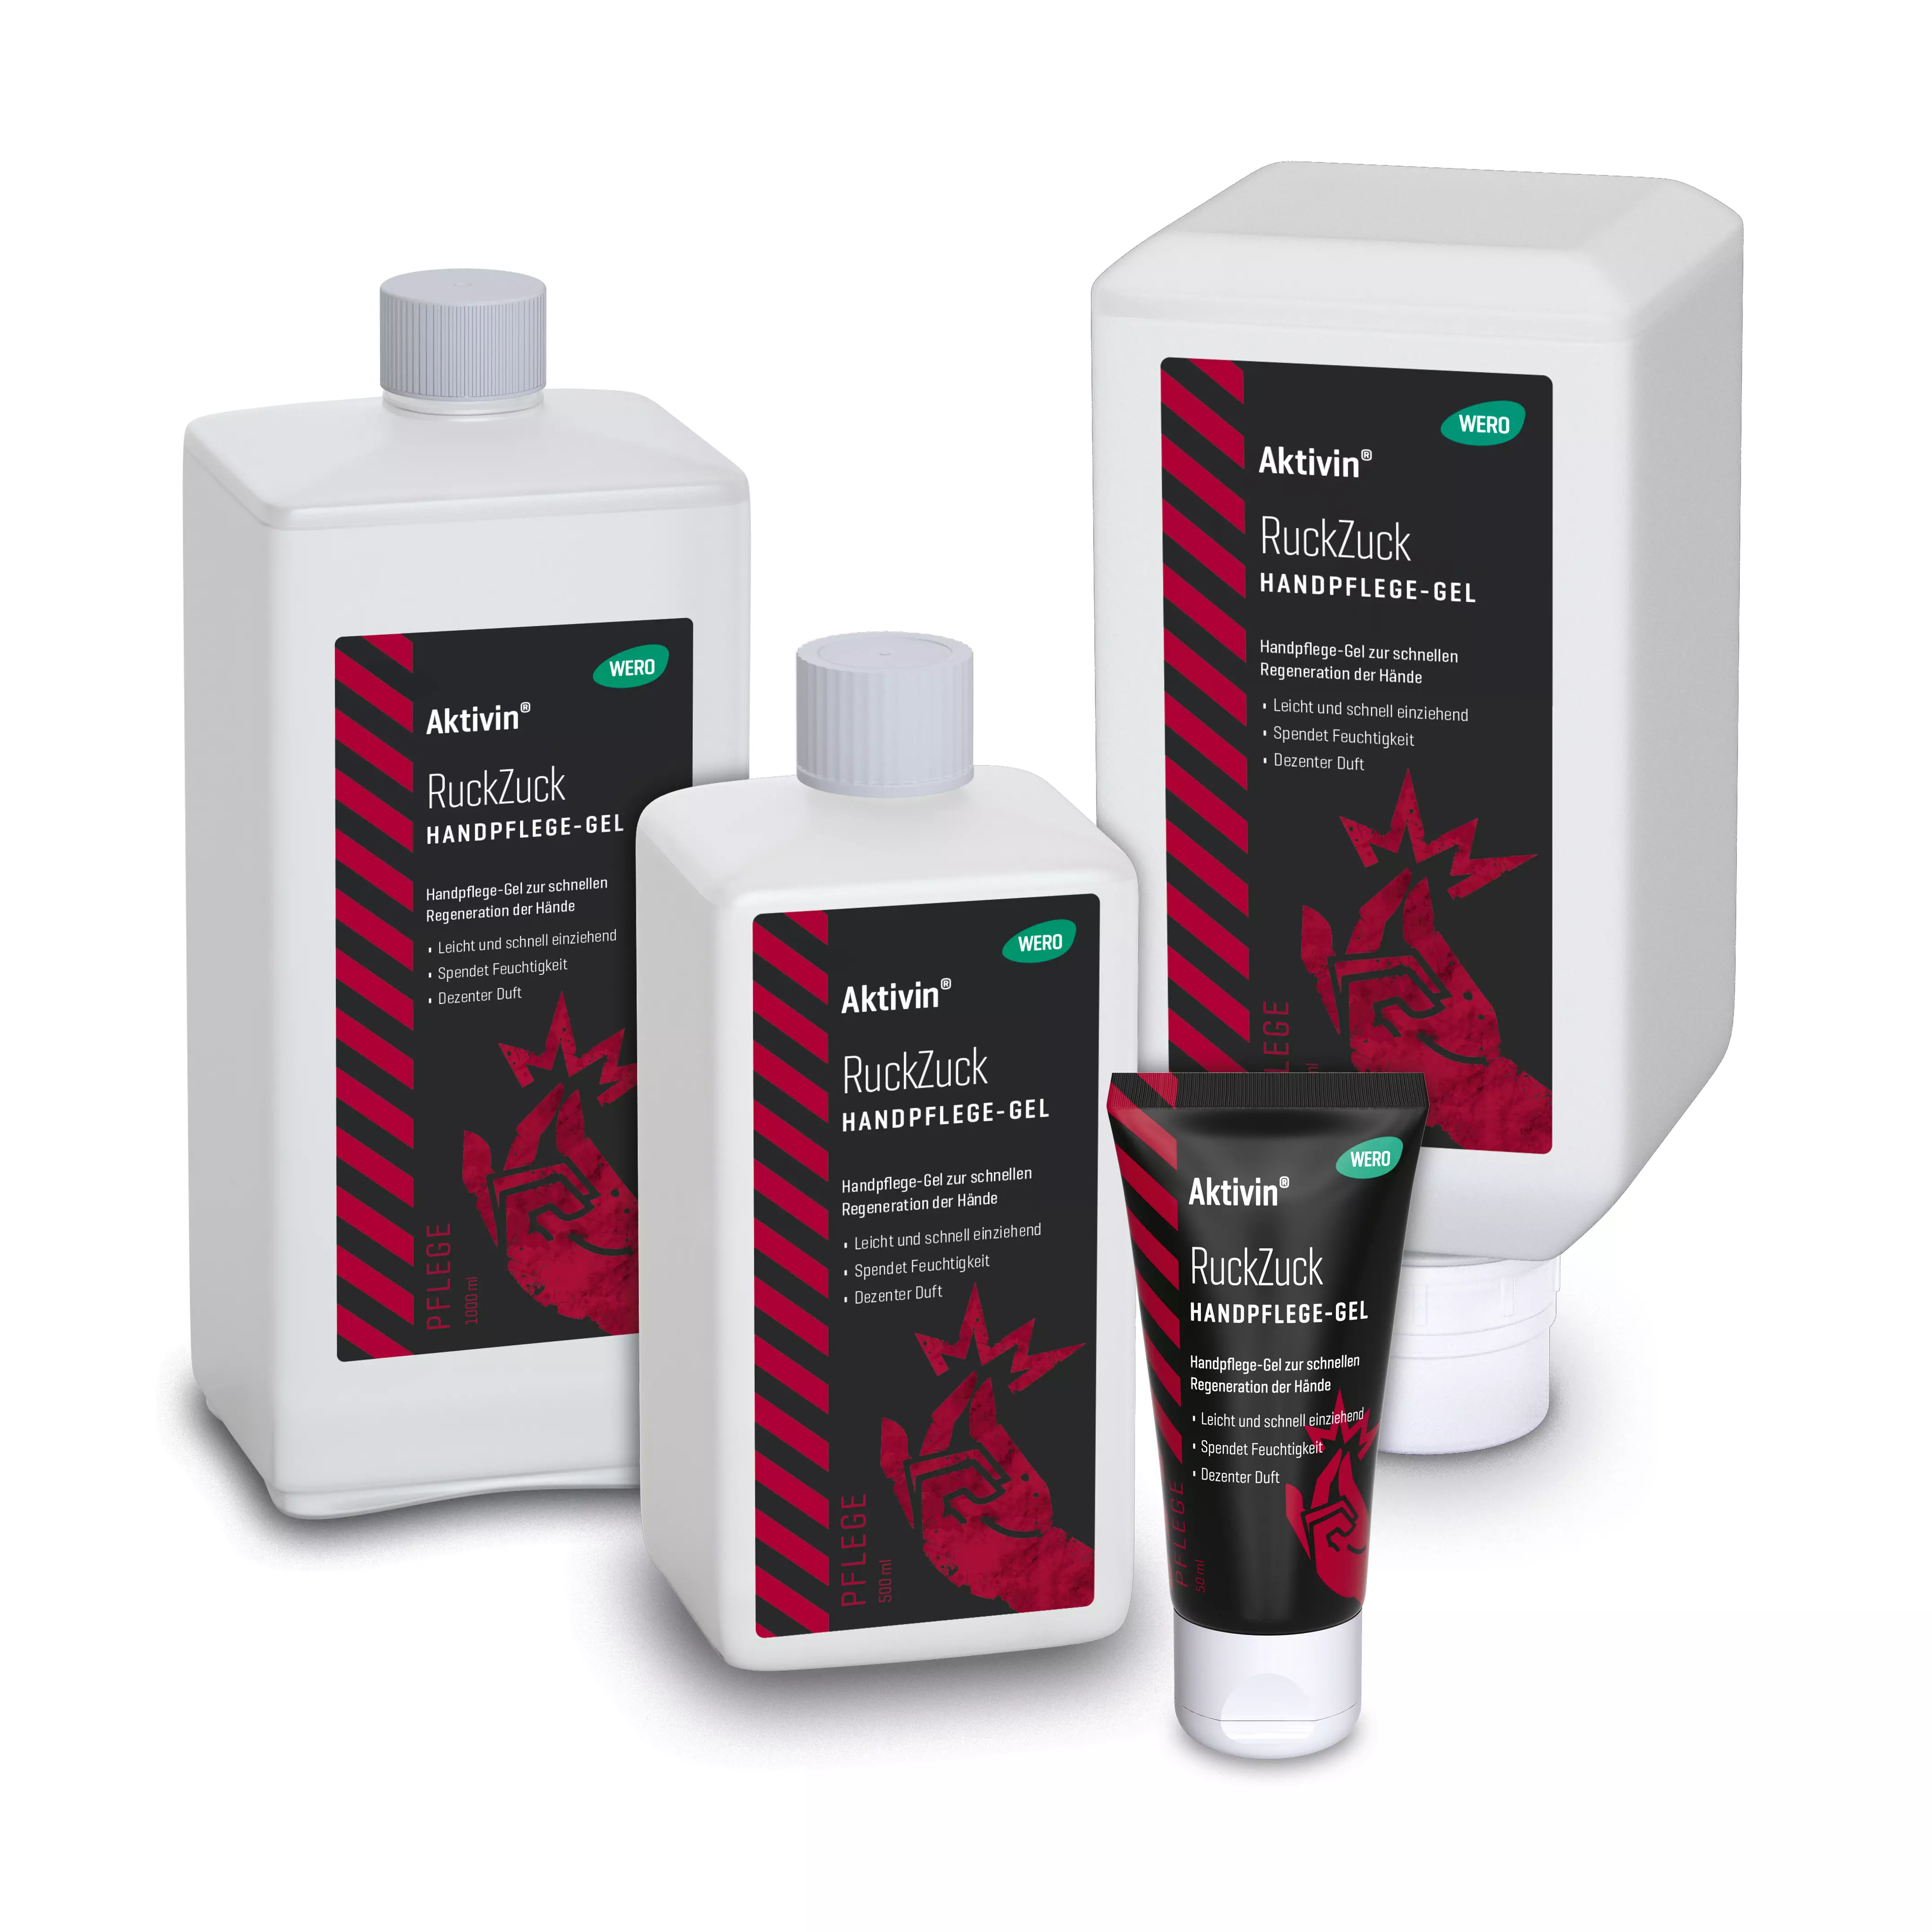 Skin care gel Aktivin® RuckZuck - Euro bottle, 1,000 ml